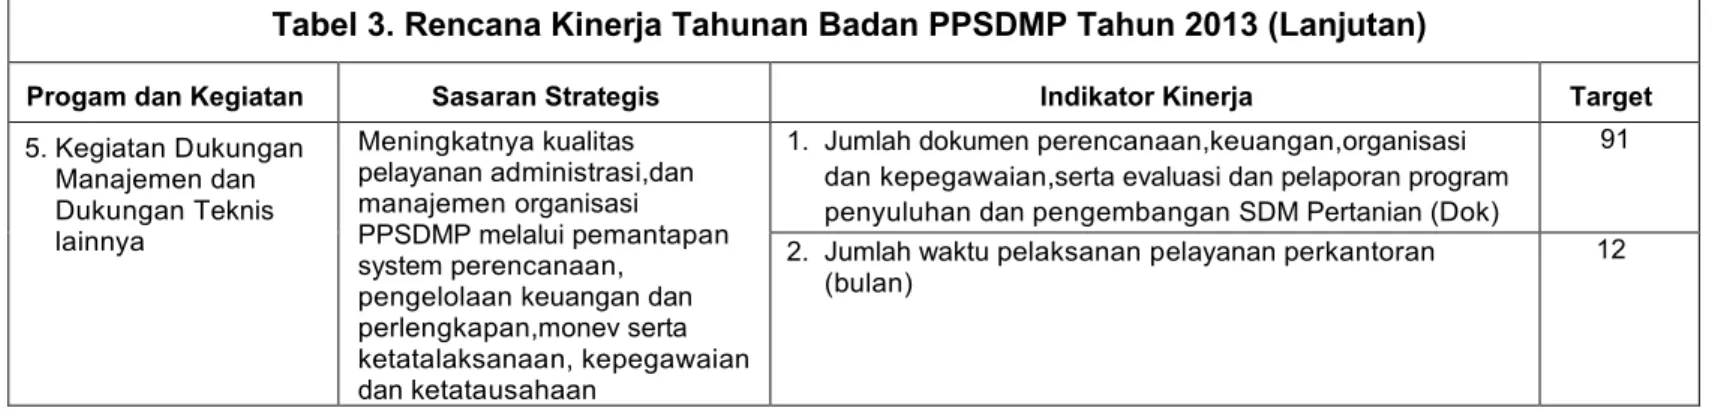 Tabel 3. Rencana Kinerja Tahunan Badan PPSDMP Tahun 2013 (Lanjutan)